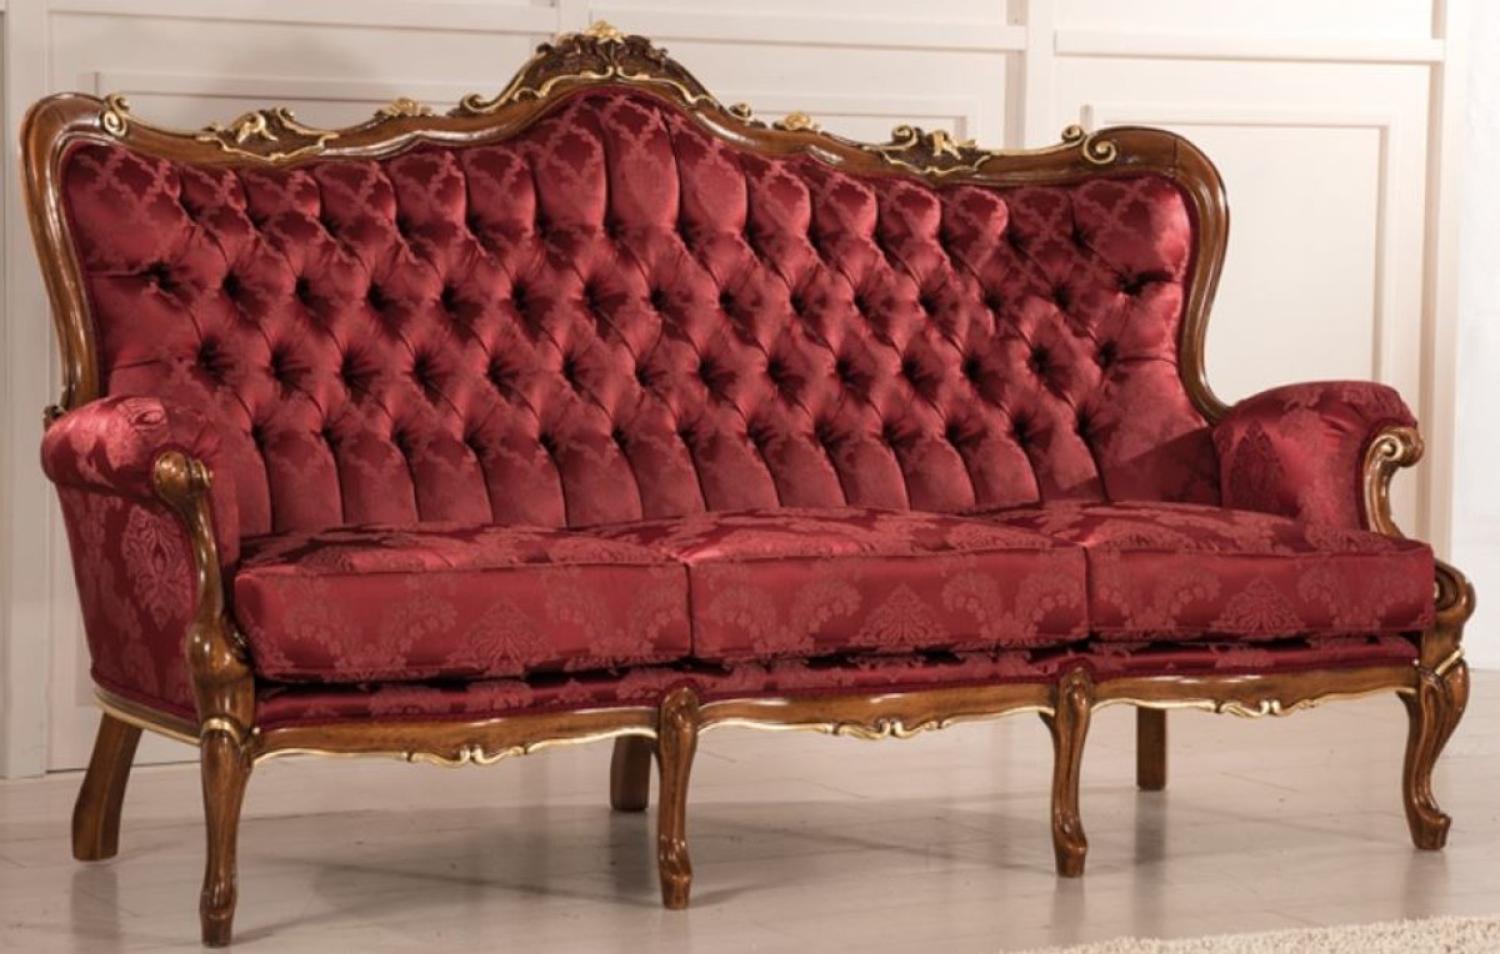 Casa Padrino Luxus Barock Wohnzimmer Sofa mit elegantem Muster Bordeauxrot / Braun / Gold 200 x 90 x H. 115 cm - Barockstil Wohnzimmer Möbel - Edel & Prunkvoll Bild 1